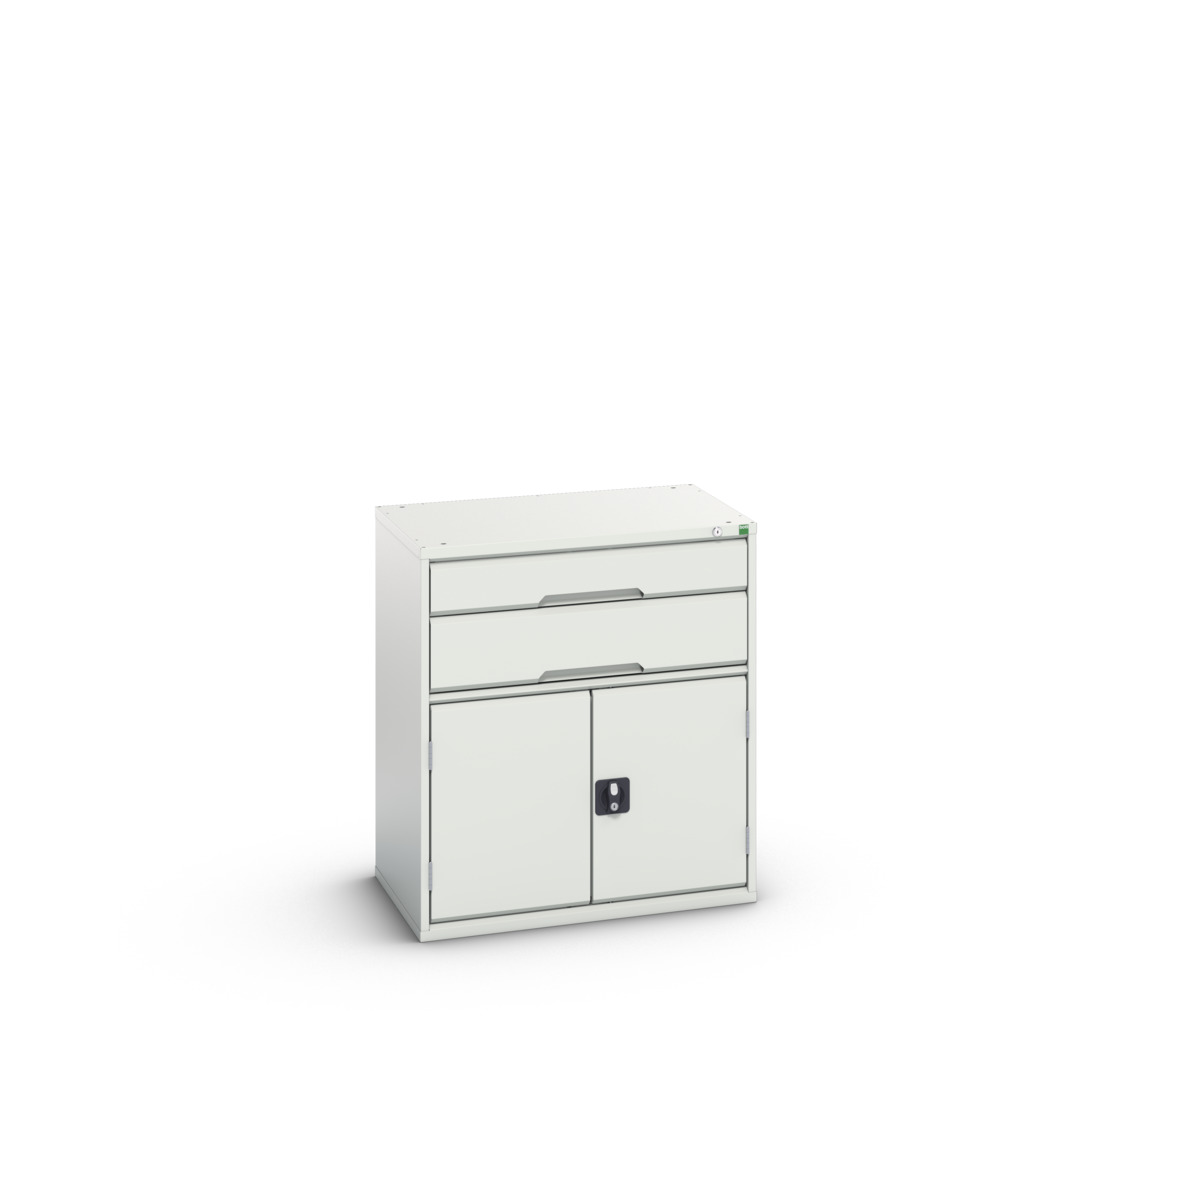 16925137.16 - verso drawer-door cabinet